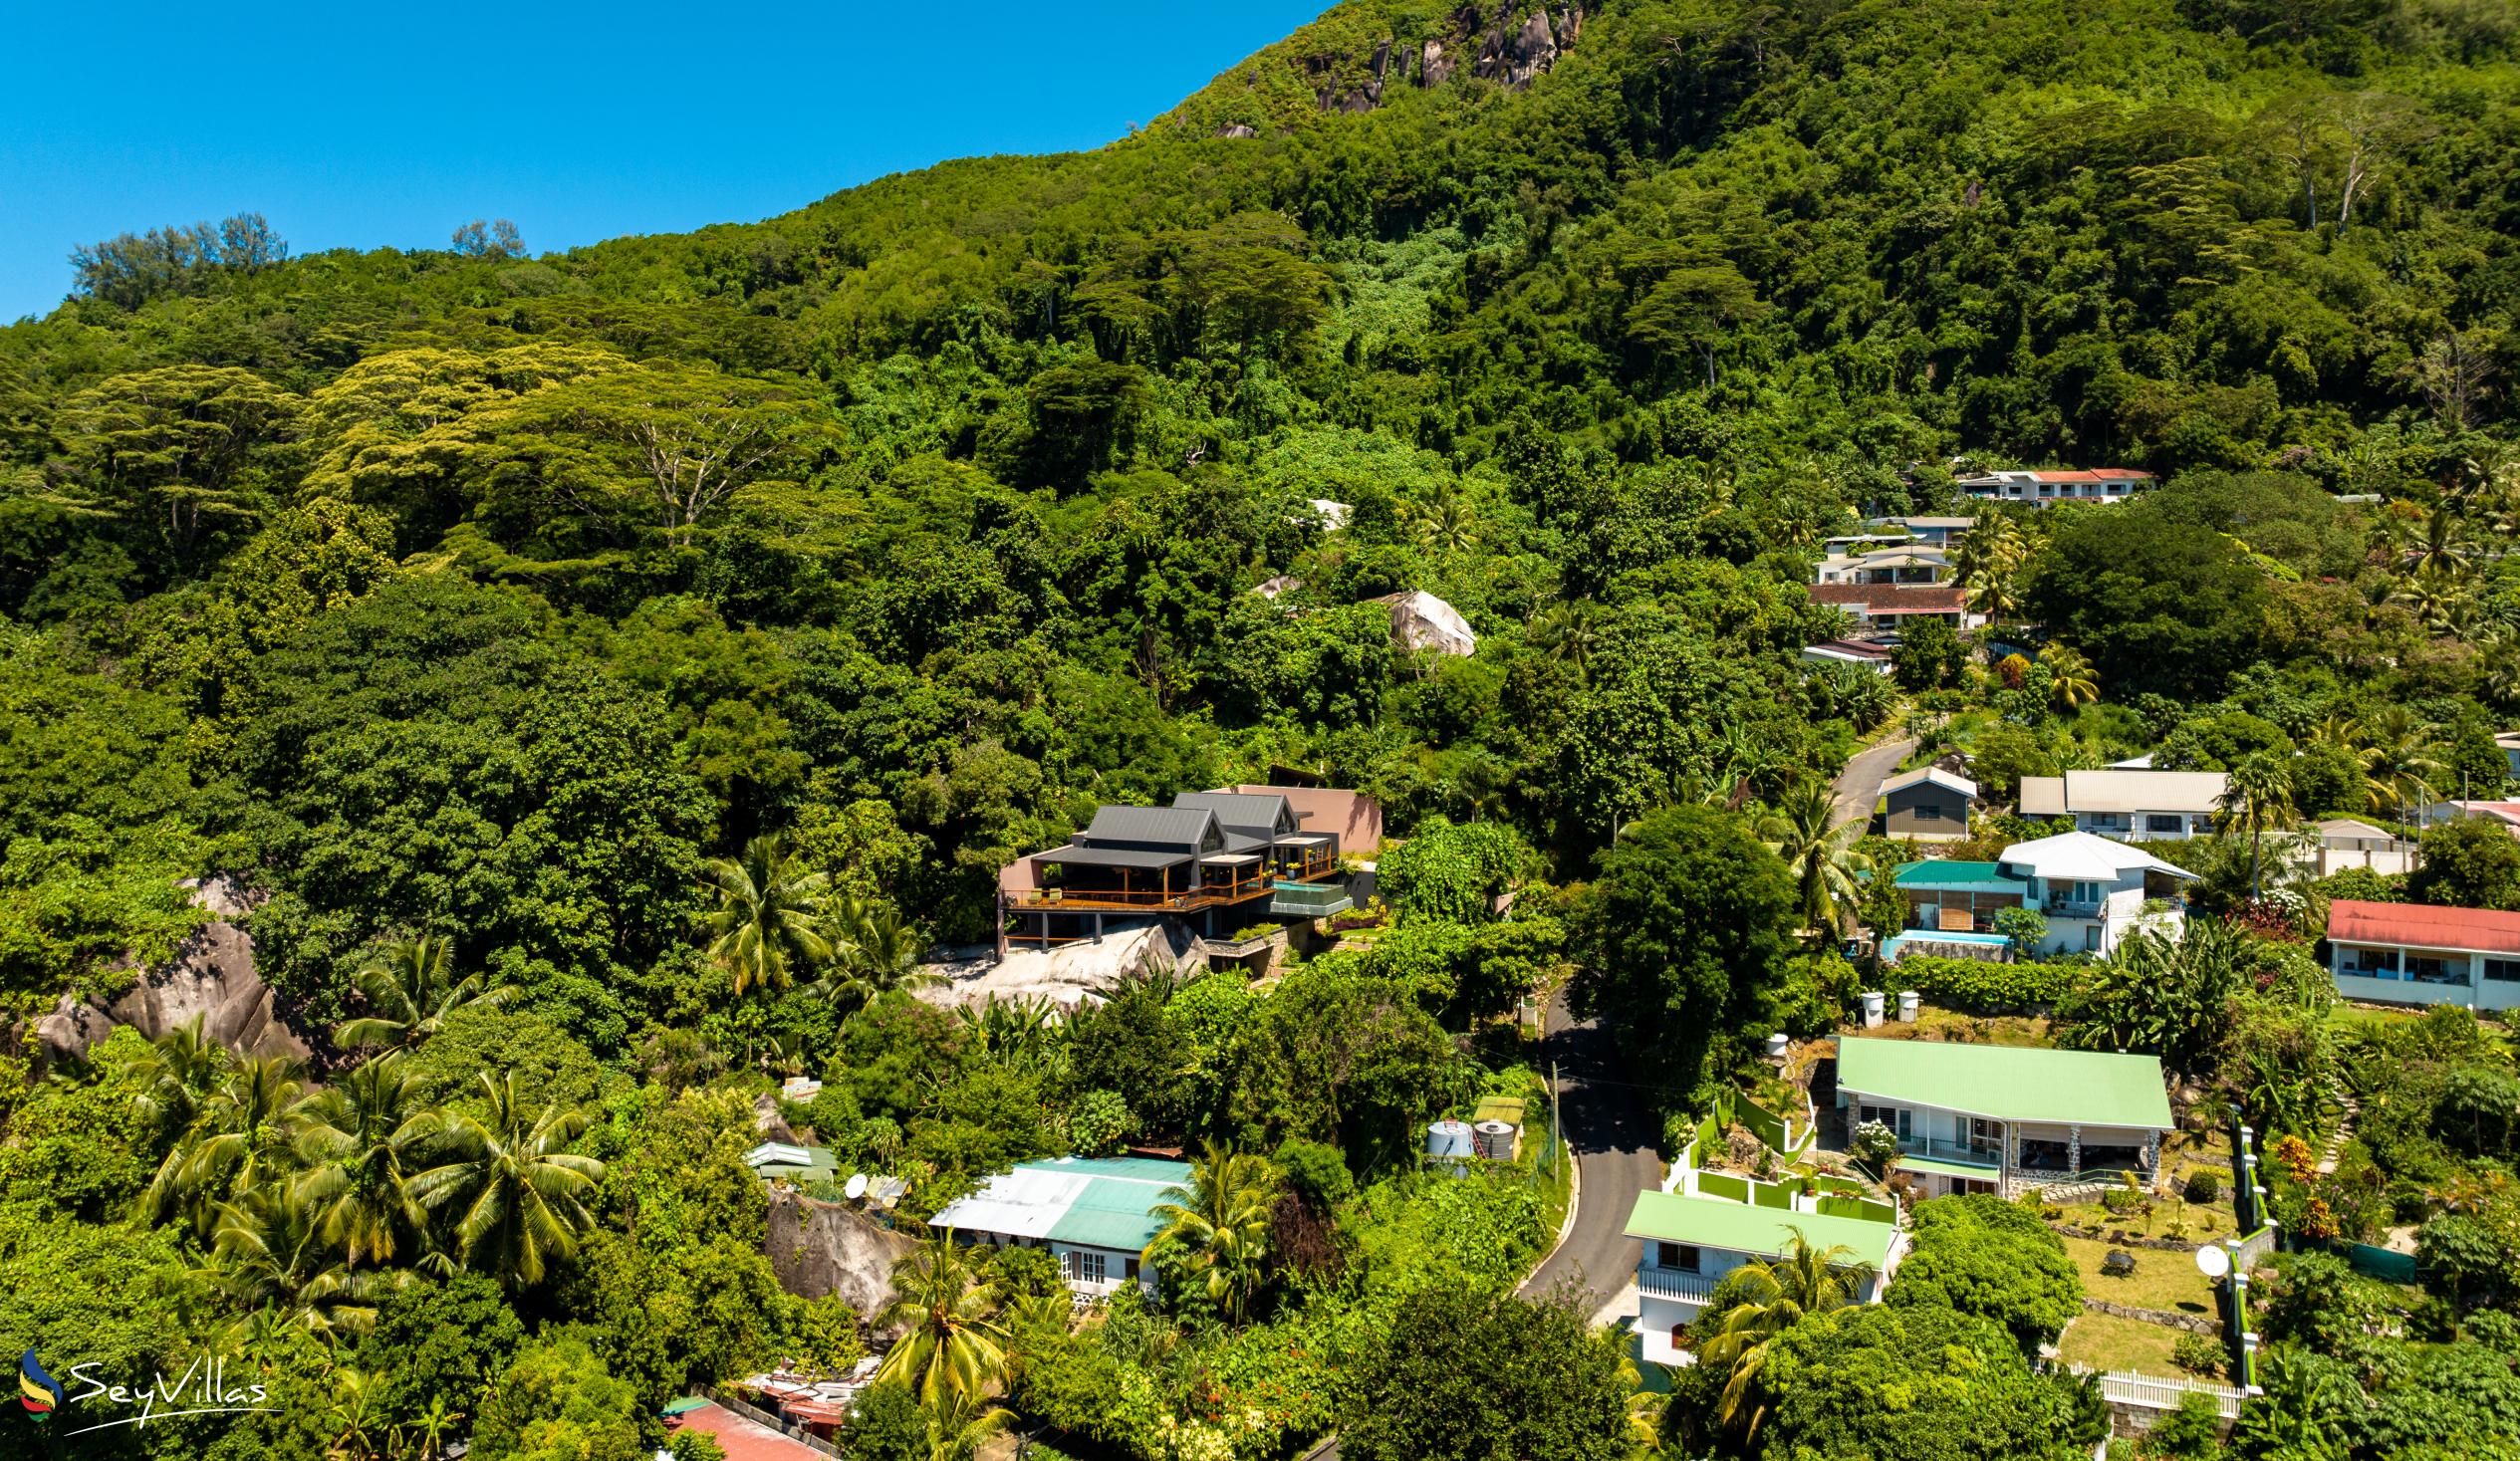 Foto 60: Maison Gaia - Location - Mahé (Seychelles)